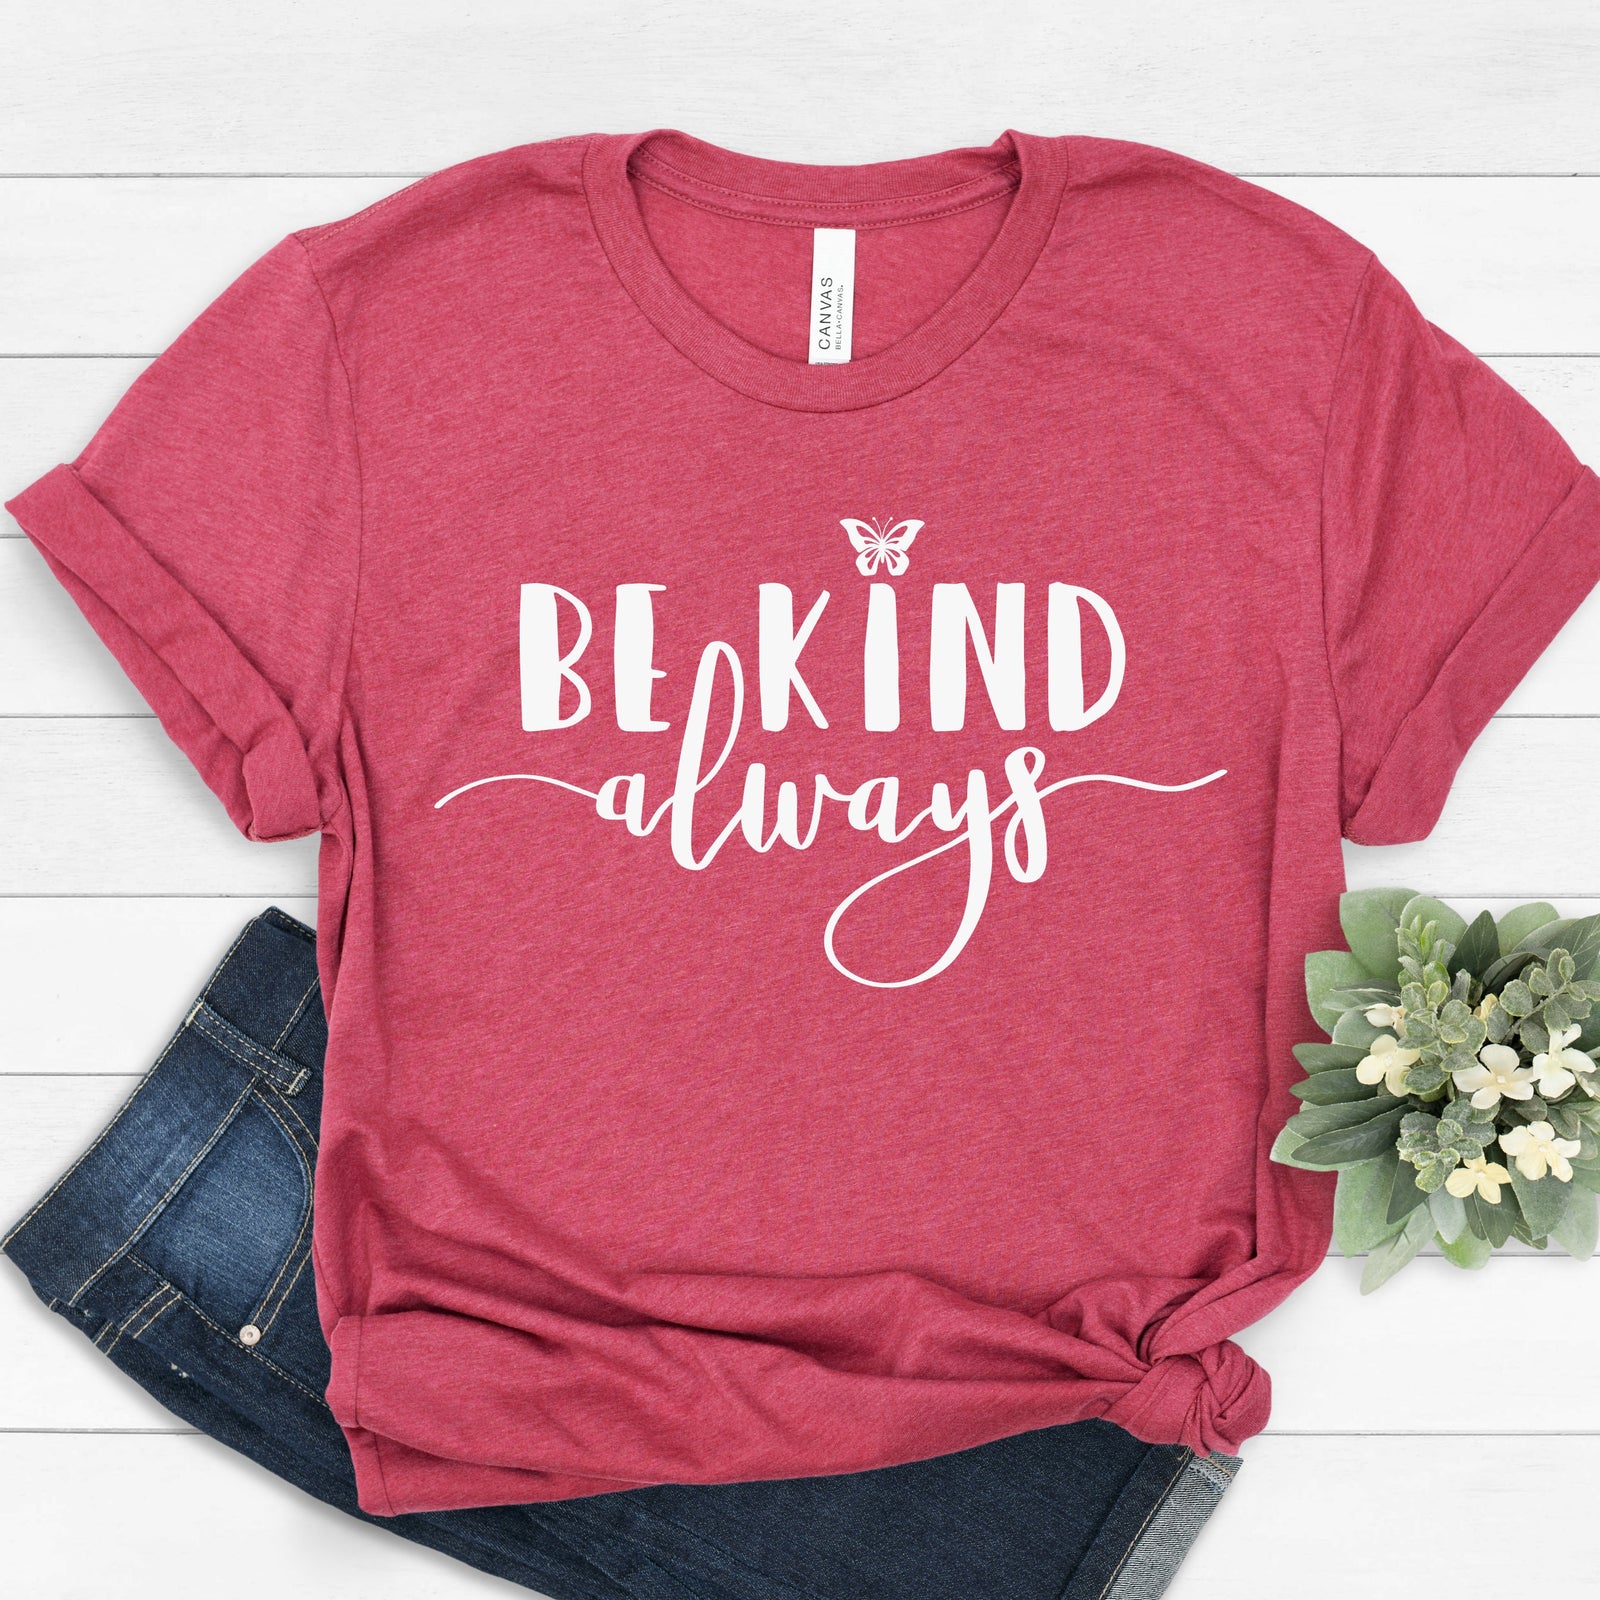 Be Kind Always T Shirt - Inspirational - Motivational T Shirt - Values Matter T Shirt